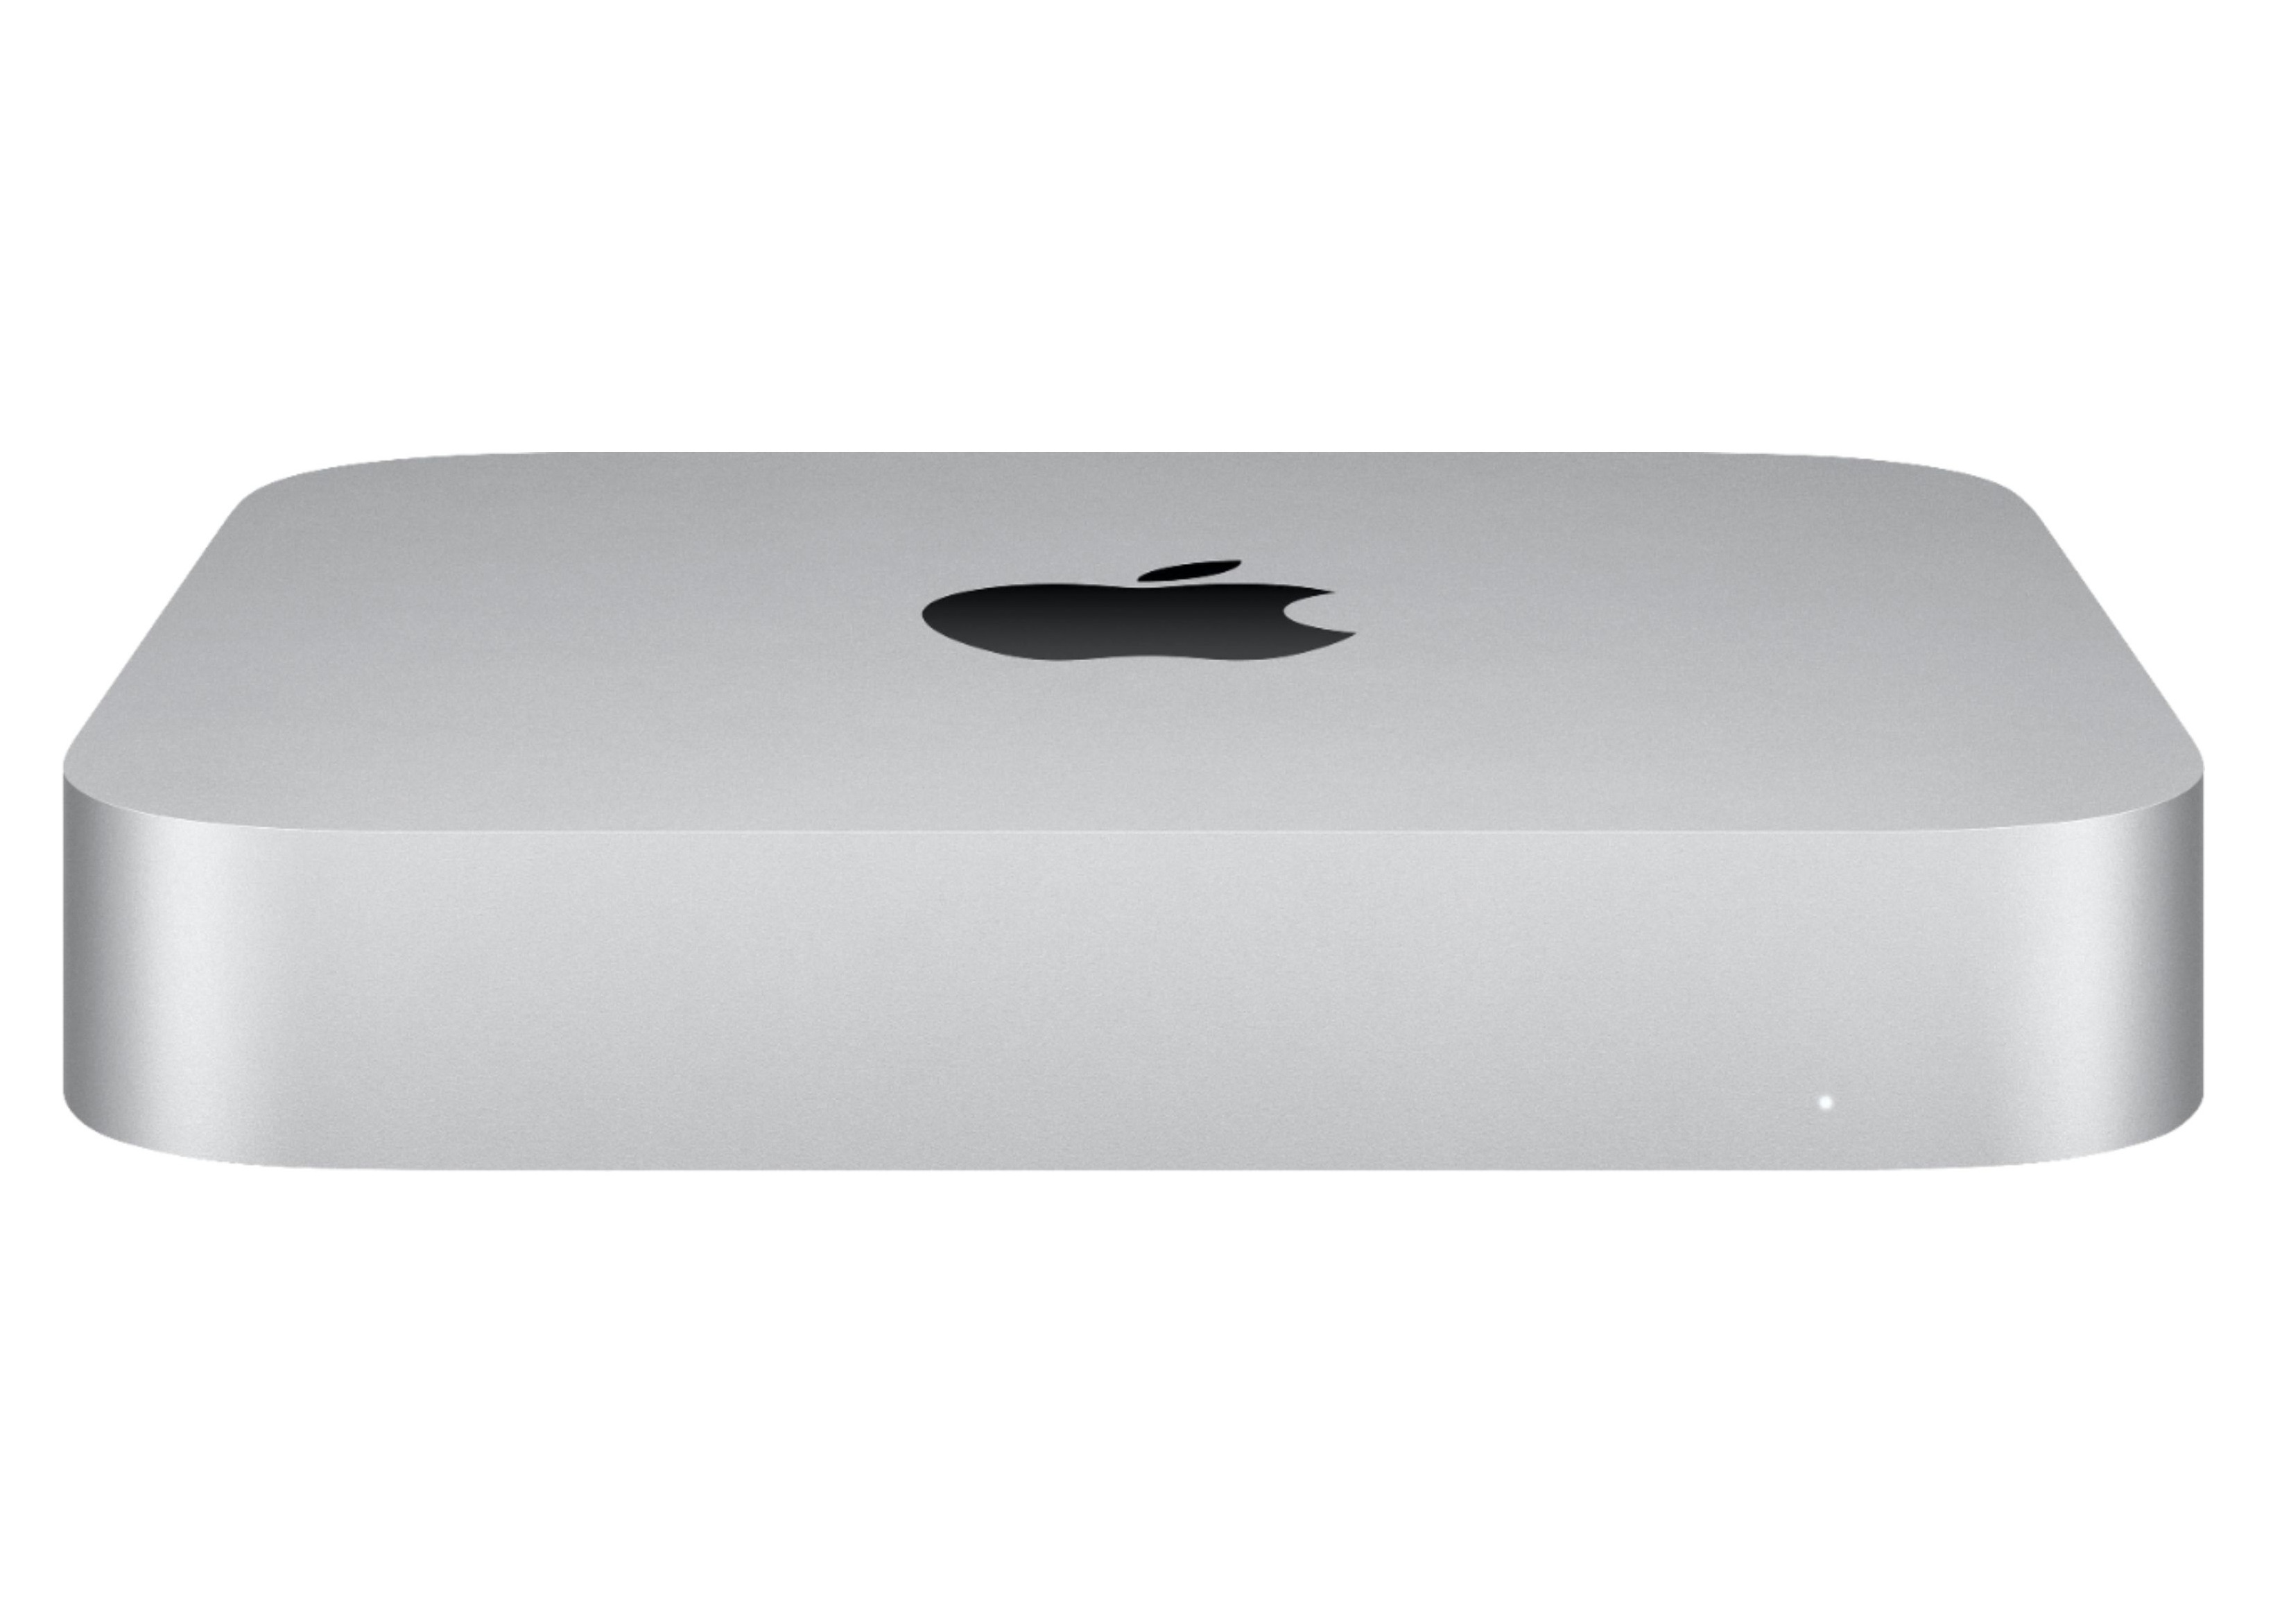 Apple Mac Mini Apple M1 Chip, 8GB RAM, 256GB SSD Storage 2020